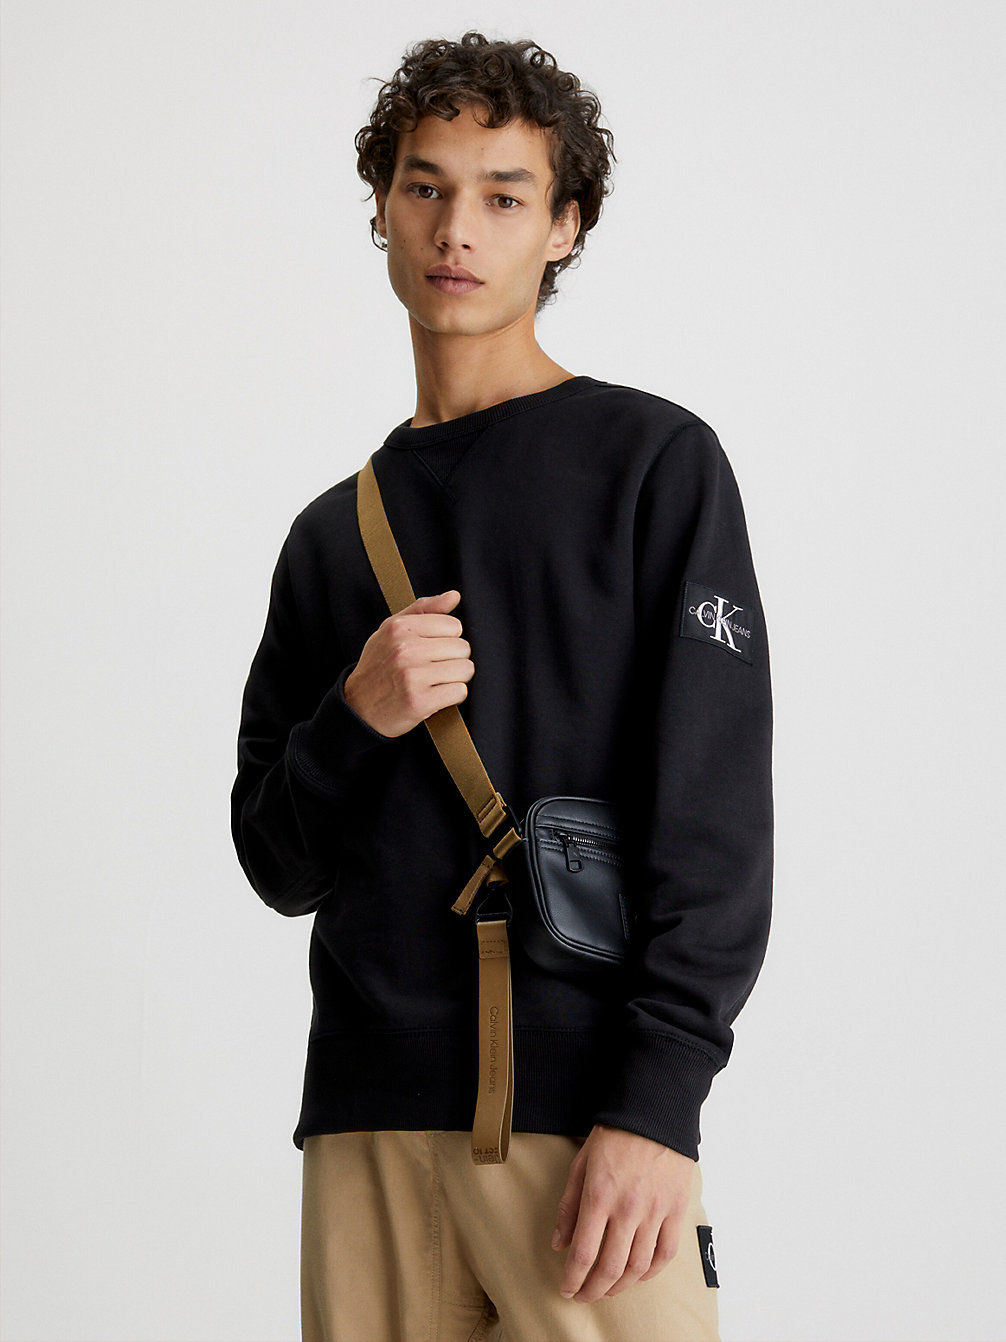 CK BLACK Sweat-Shirt Avec Insigne Monogramme undefined hommes Calvin Klein